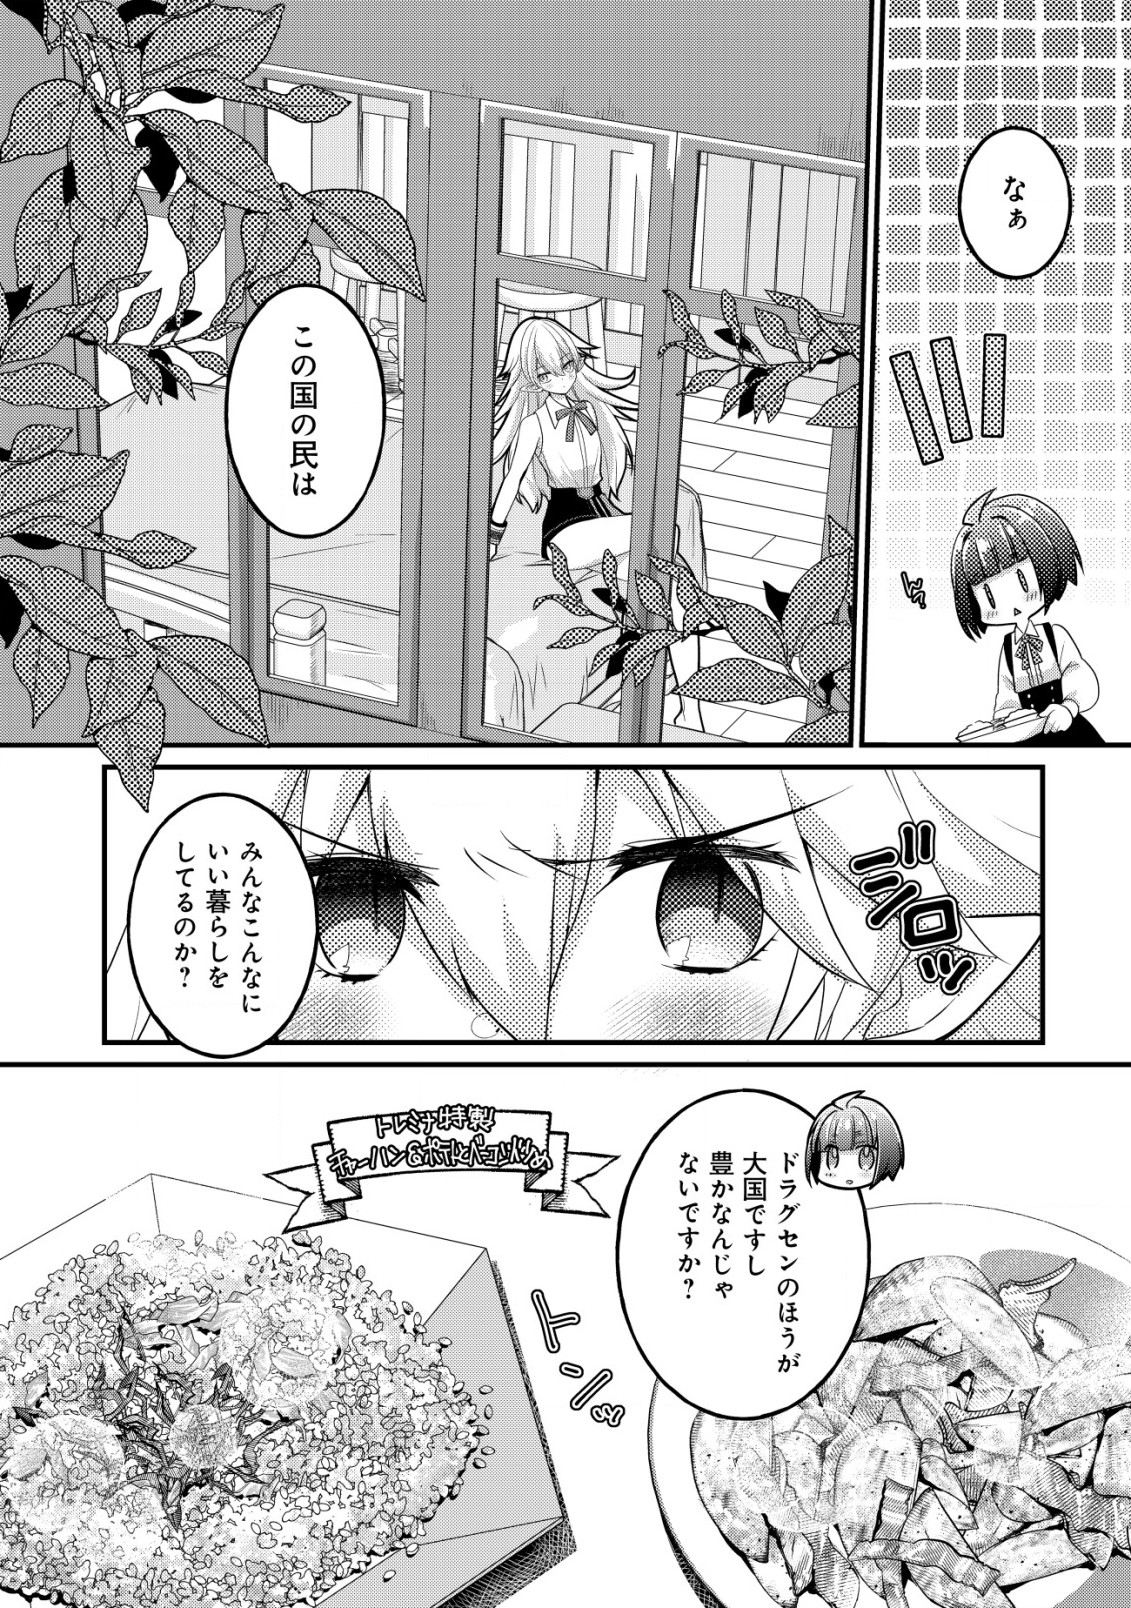 Jagaimo Nouka no Muramusume, Kenshin to Utawareru Made. - Chapter 15 - Page 18